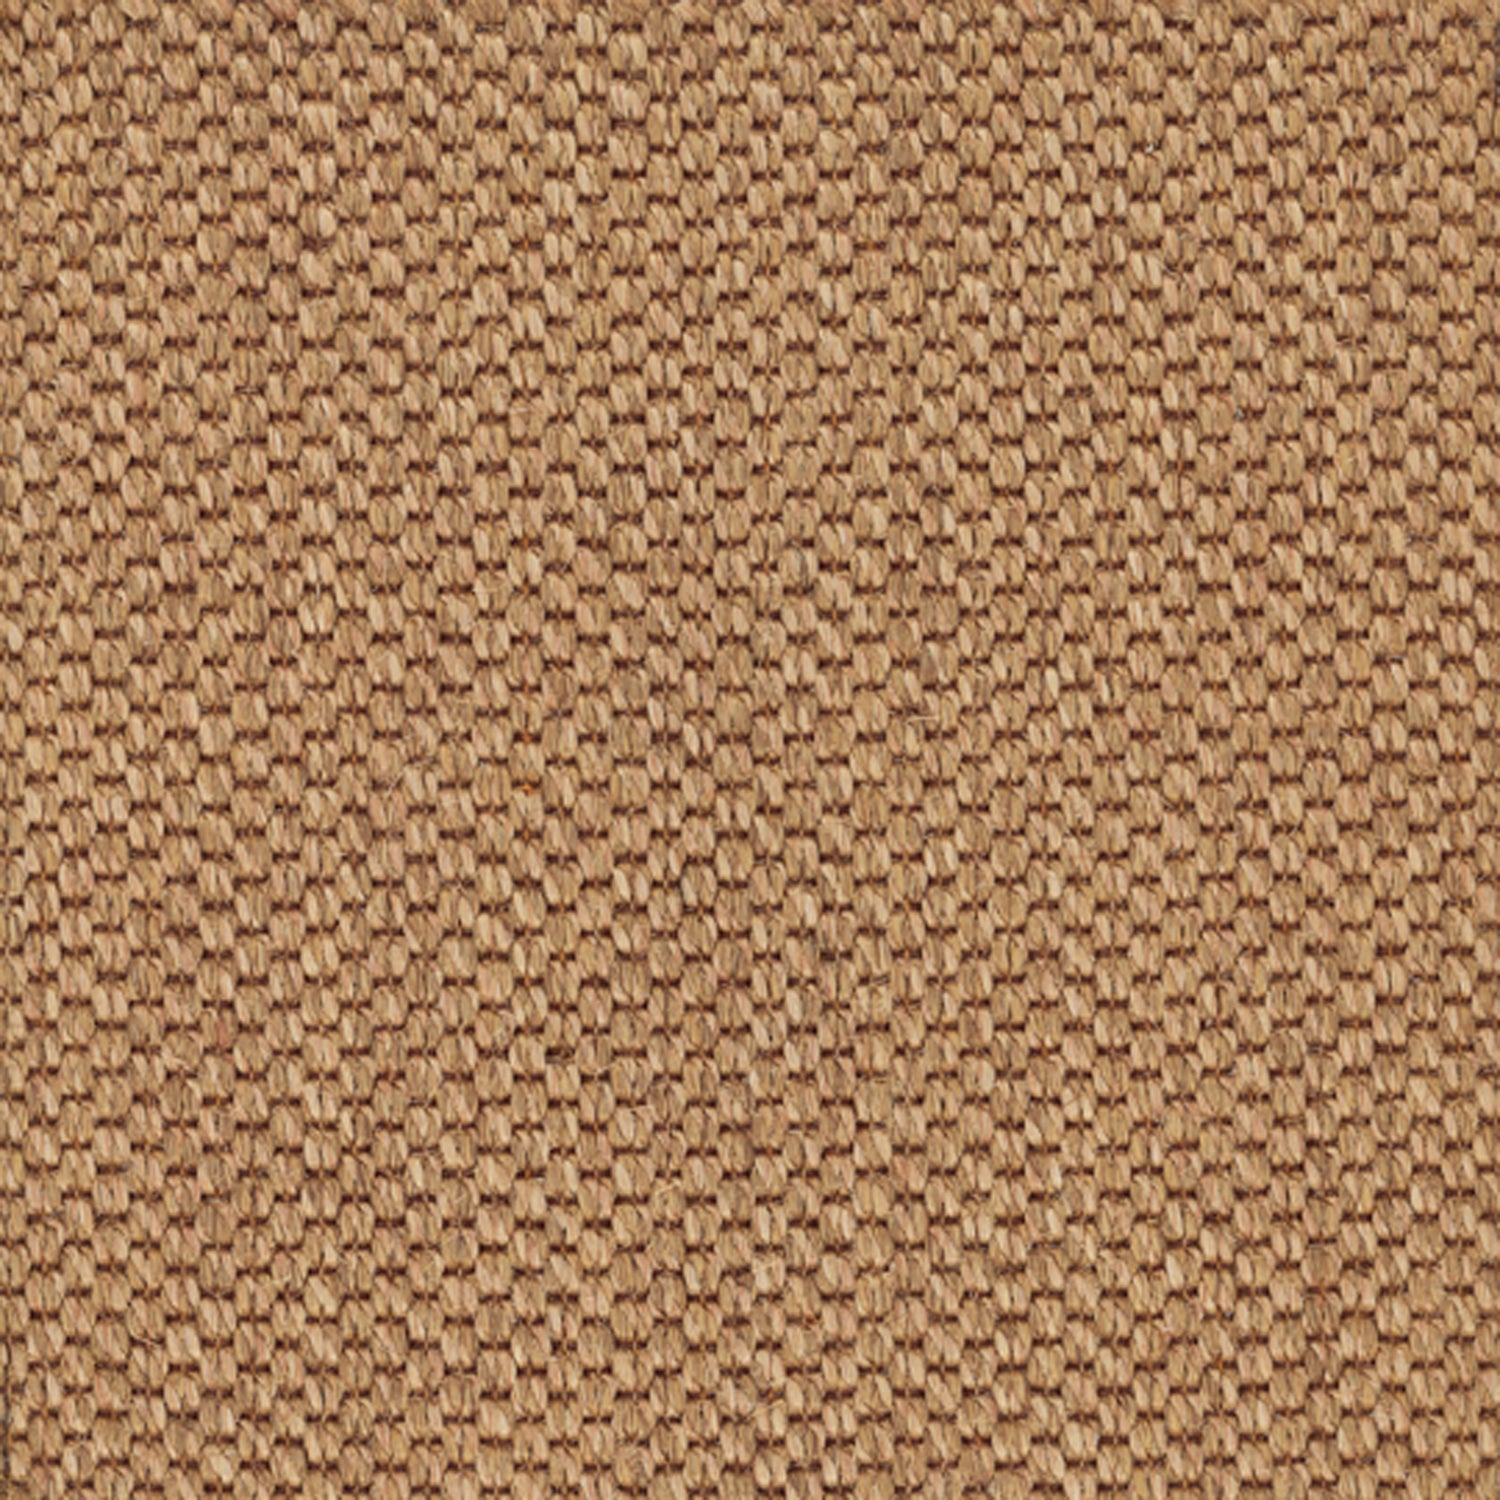 Sisal broadloom carpet swatch in a chunky grid weave in tan and dark brown.